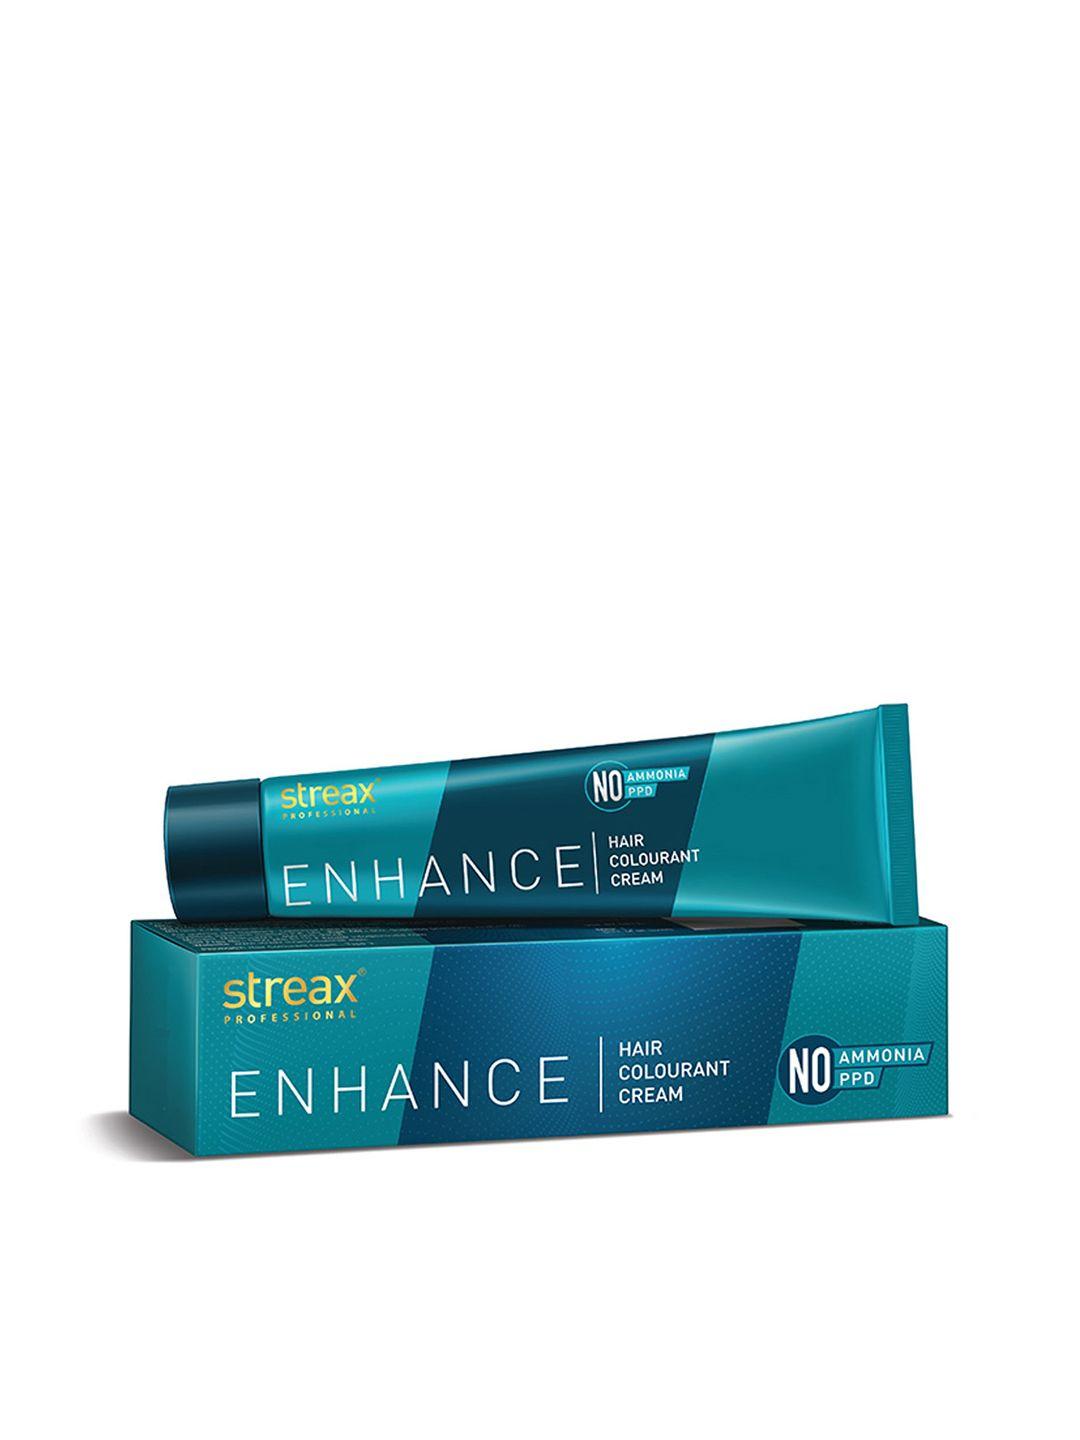 streax professional enhance ammonia & ppd free hair colourant cream 90g - dark brown 3